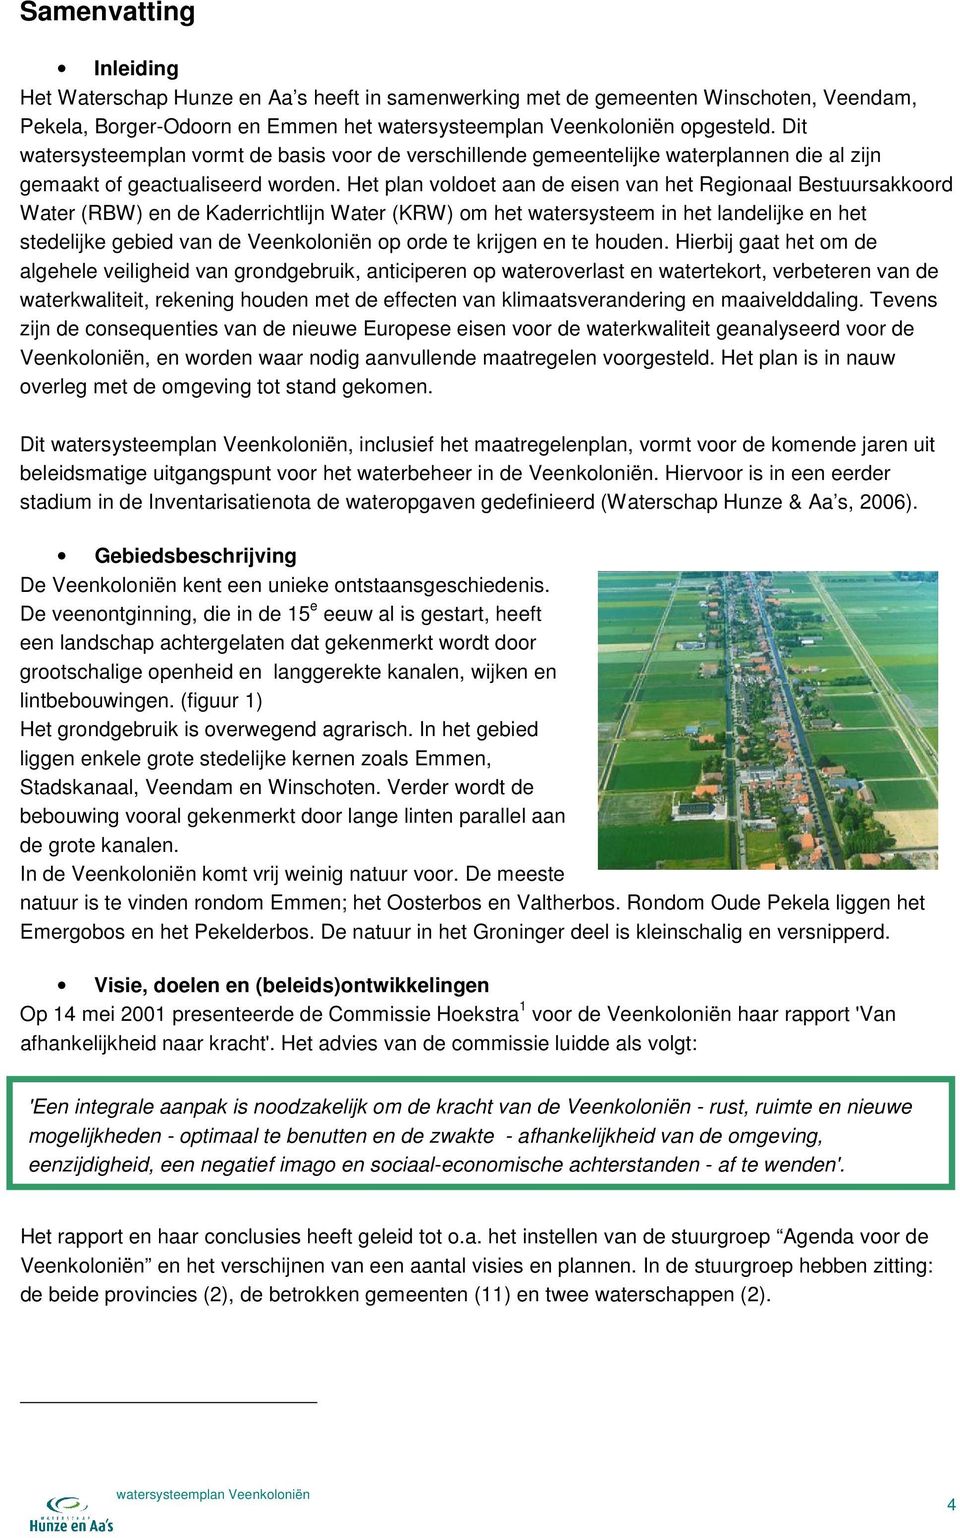 Het plan voldoet aan de eisen van het Regionaal Bestuursakkoord Water (RBW) en de Kaderrichtlijn Water (KRW) om het watersysteem in het landelijke en het stedelijke gebied van de Veenkoloniën op orde